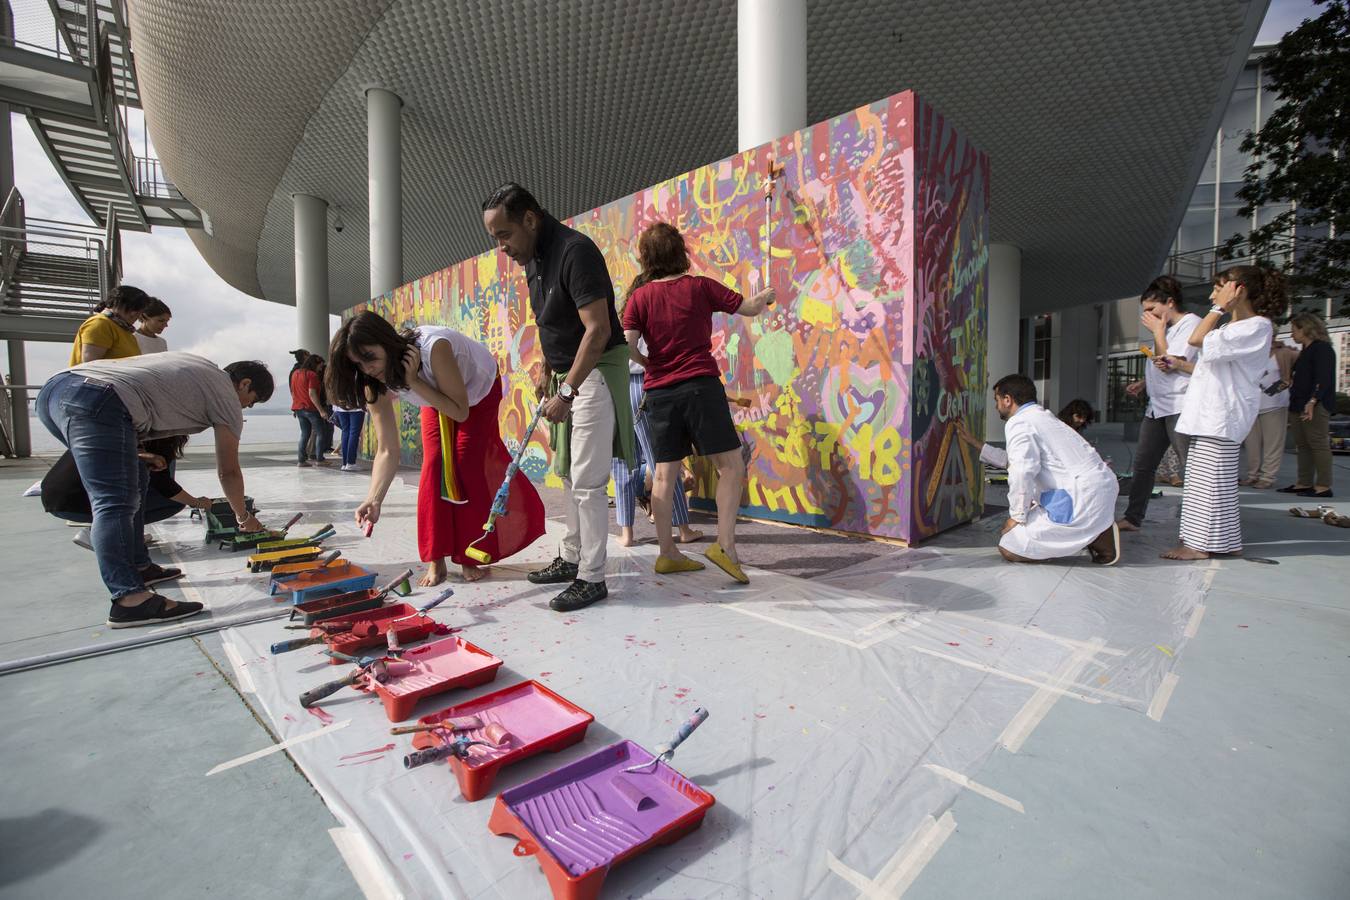 Creación del mural artístico "Ilusion y Emocion", pintado de manera colaborativa con el colectivo Boamistura, como cierre del curso 'Innovación y creatividad de la mano de personas con discapacidad' en el Centro Botin.